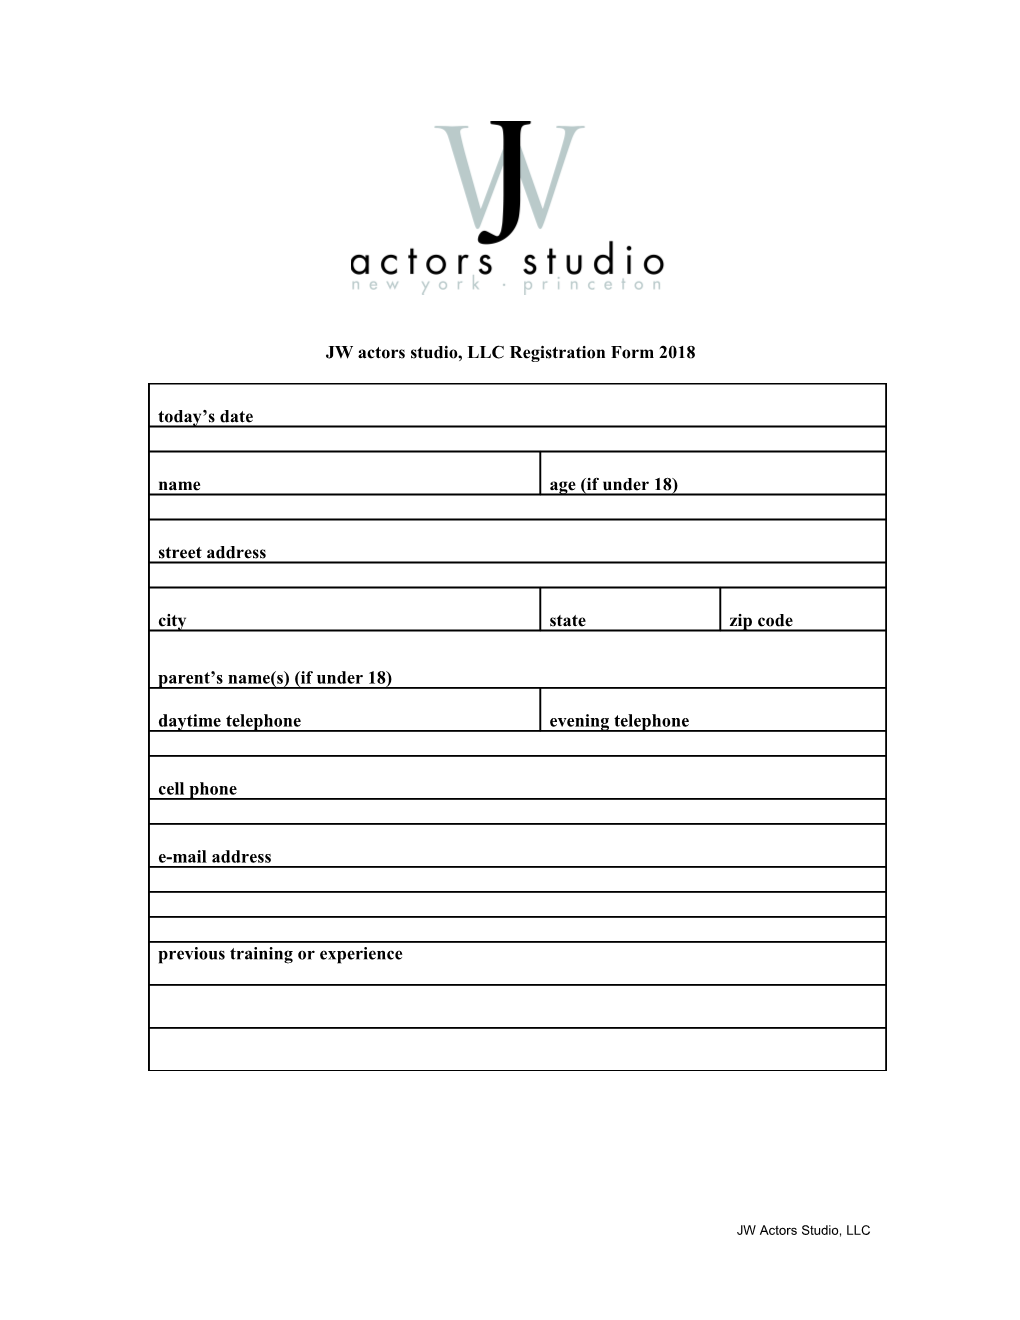 JW Actors Studio, Llcregistration Form2018